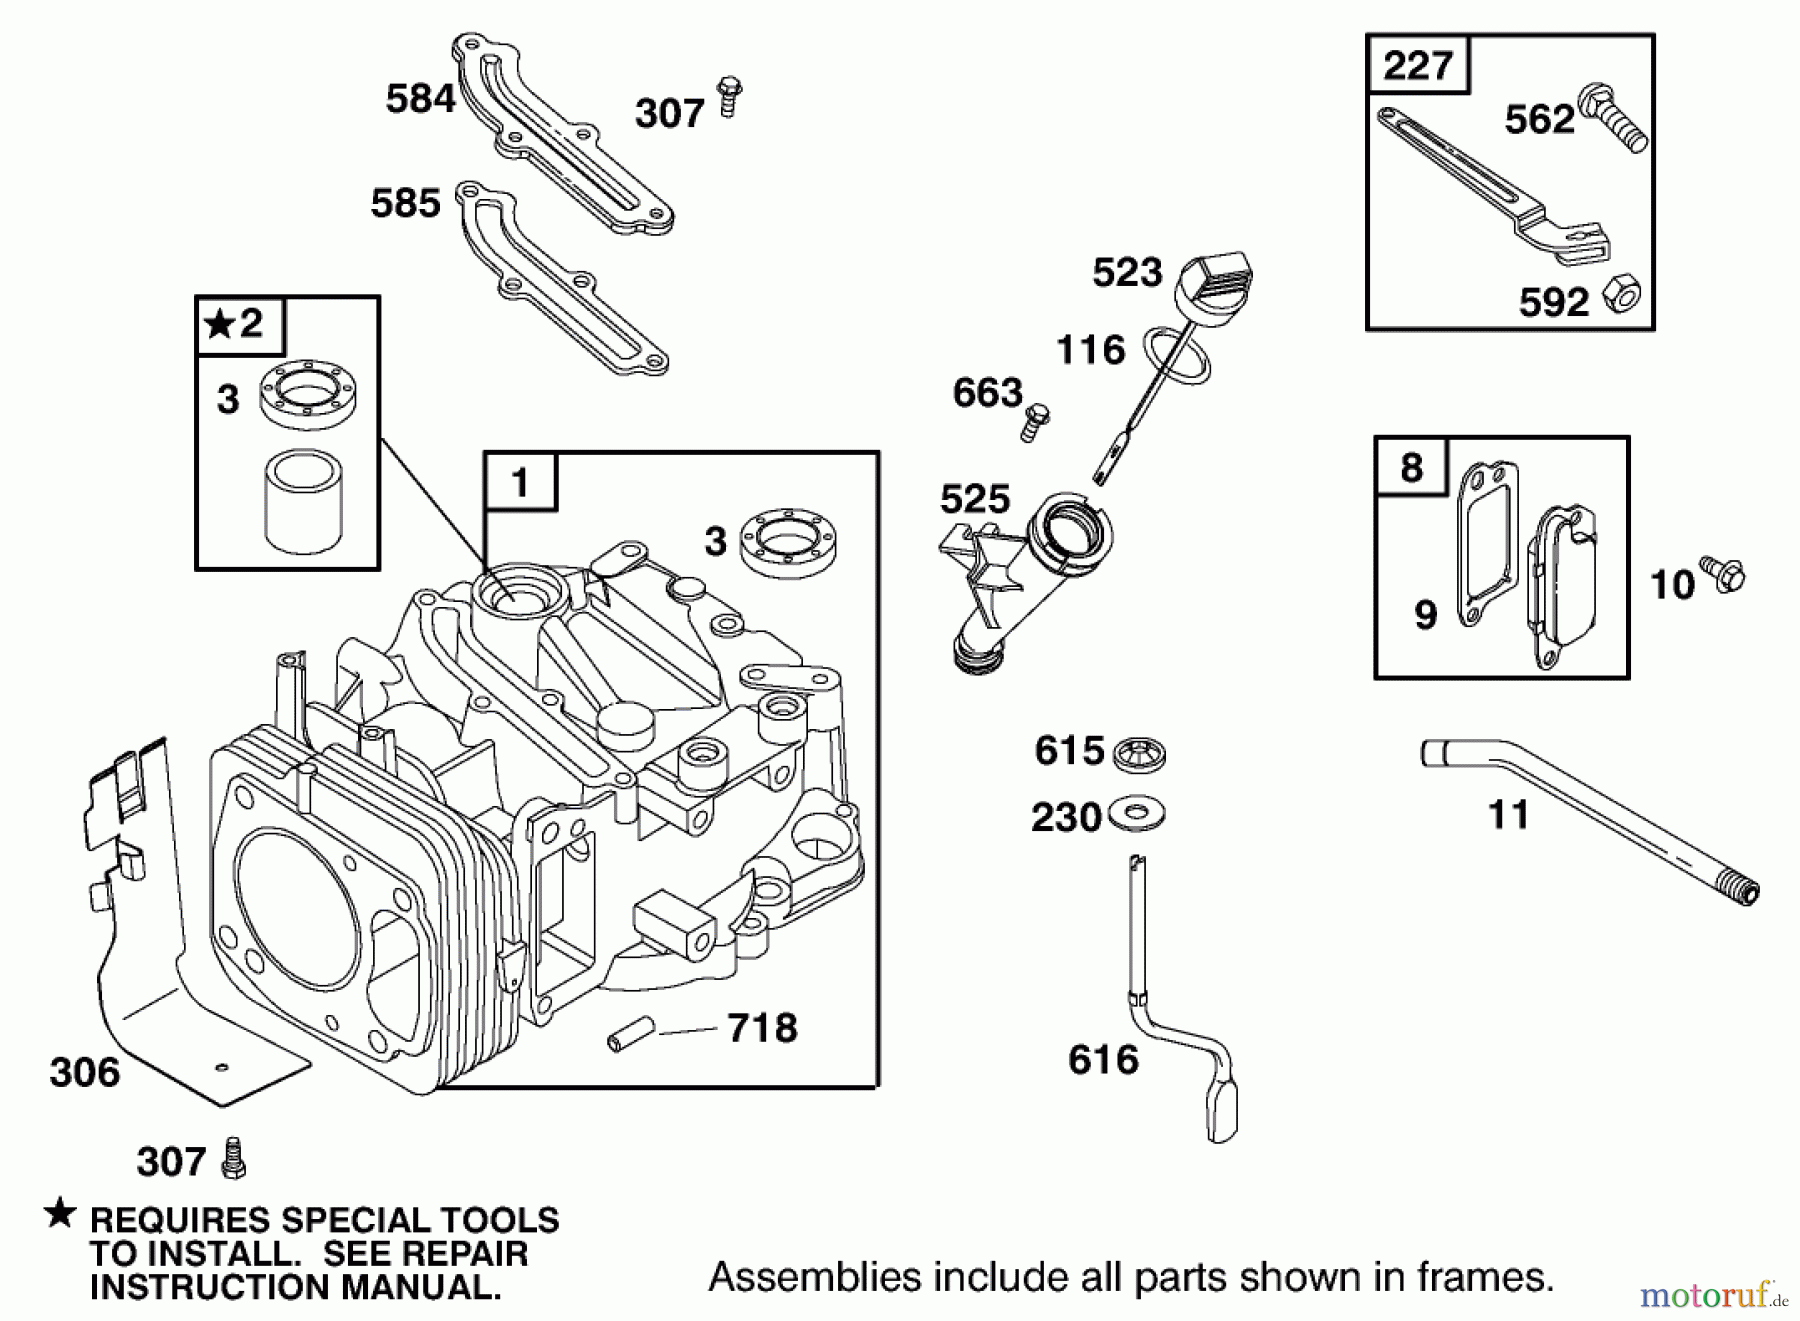  Toro Neu Mowers, Walk-Behind Seite 2 22162 - Toro Recycler Mower, 1998 (8900001-8999999) ENGINE GTS-200 #1